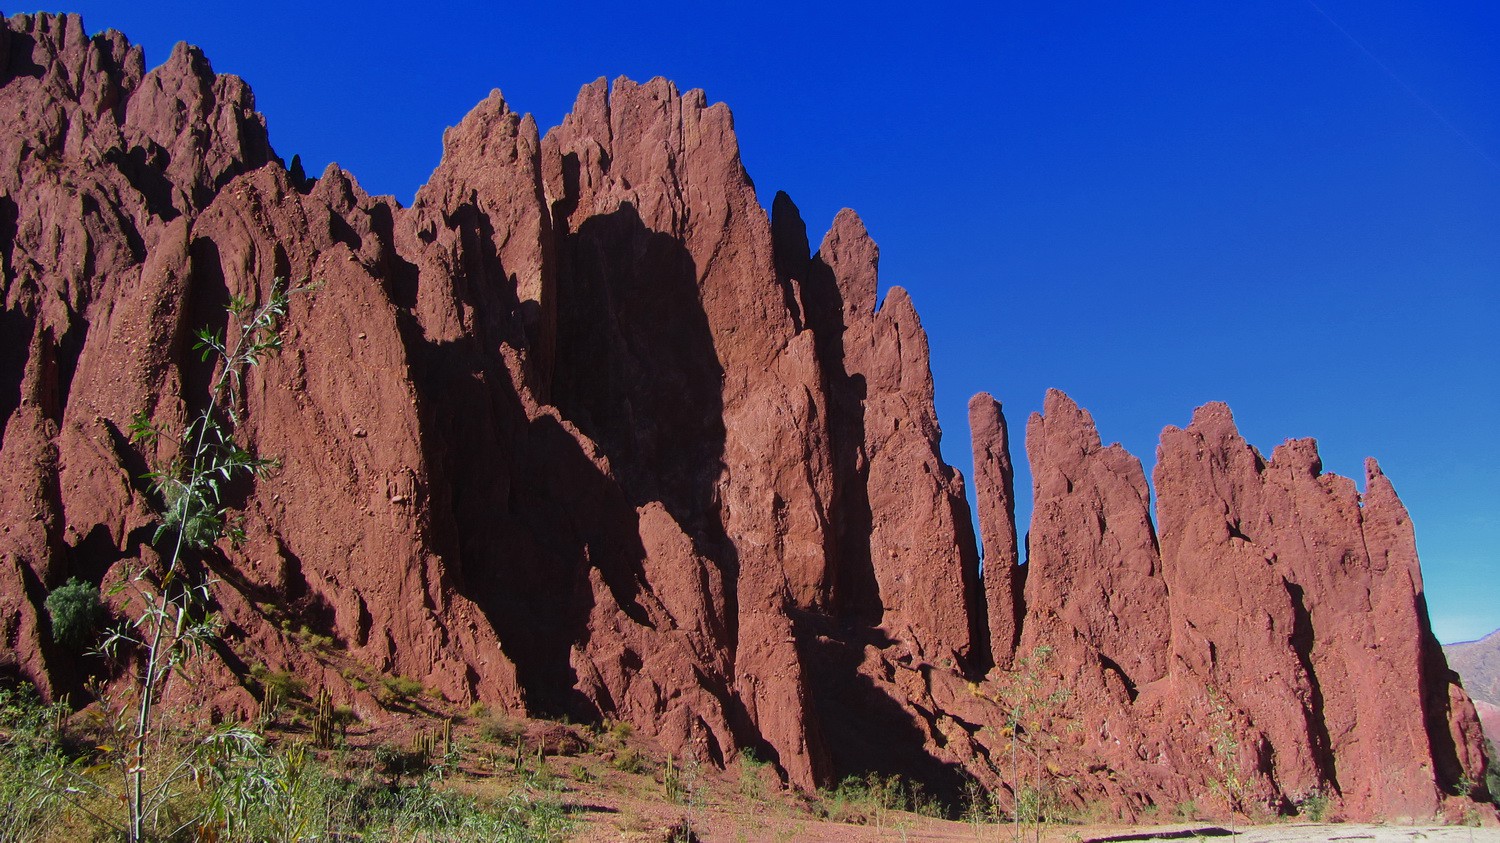 Rocks of the canyon of Tupiza